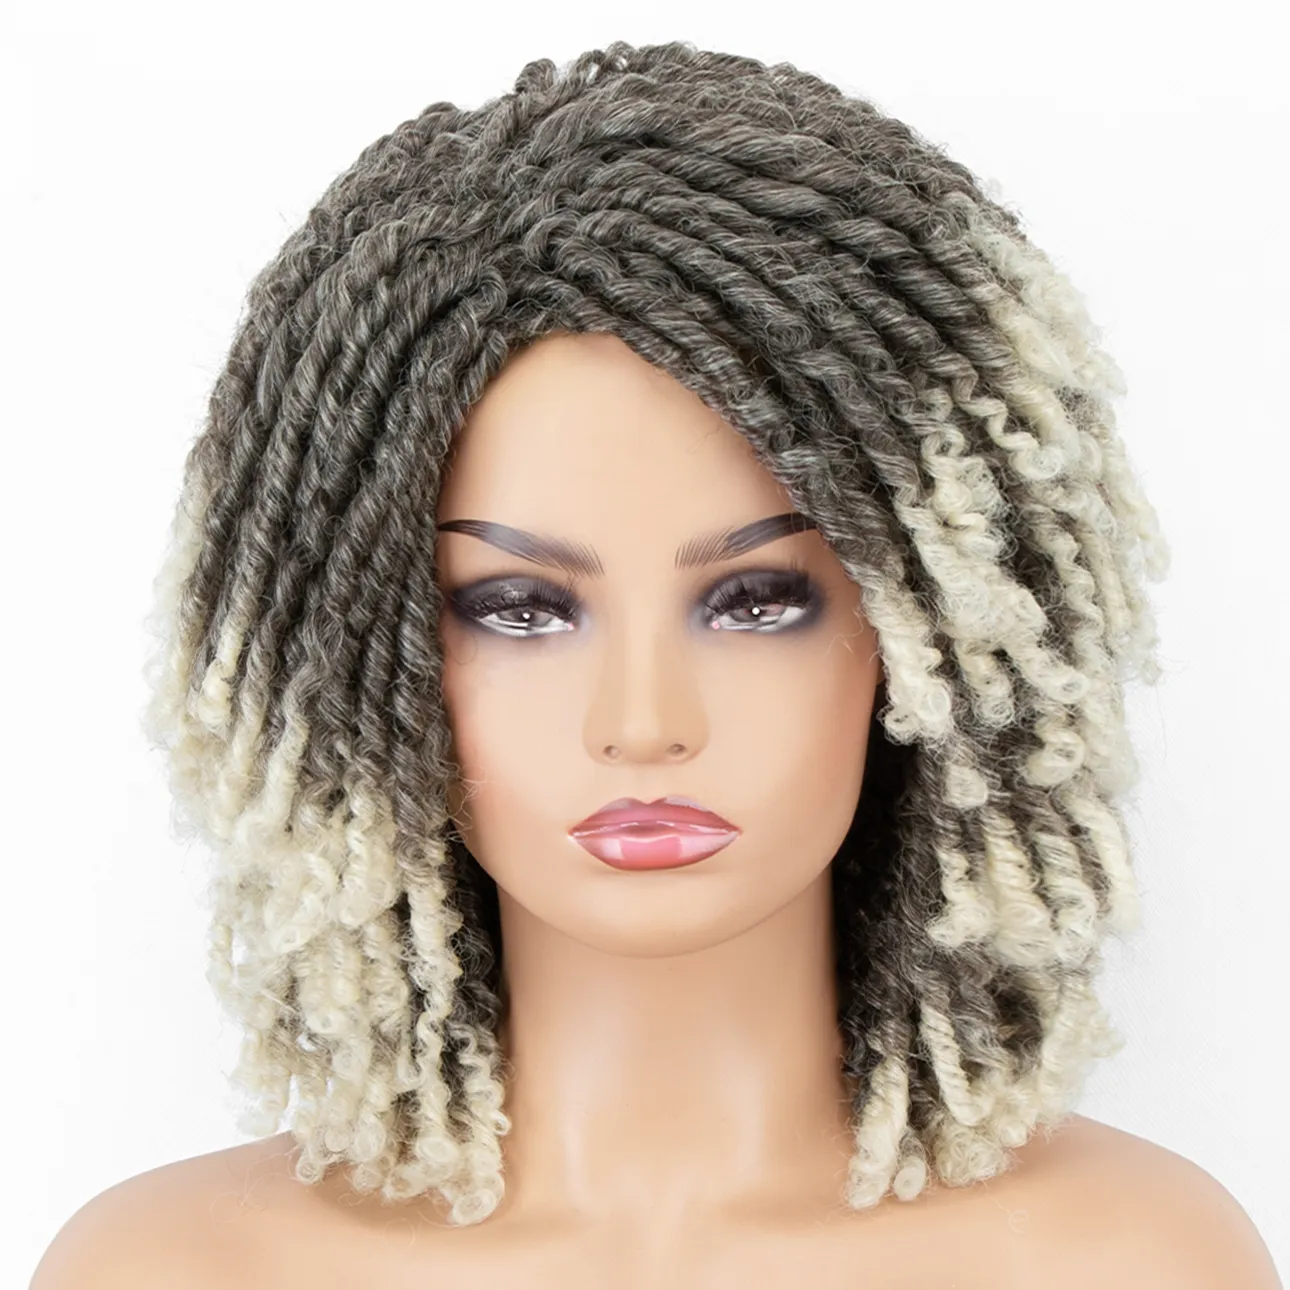 Dreadlocks Perruques Synthétiques Pour Les Femmes Court Doux Brun Mode Afro Crépus Cheveux Bouclés Avec Une Frange Crochet Twist Cheveux Perruquesusine directe